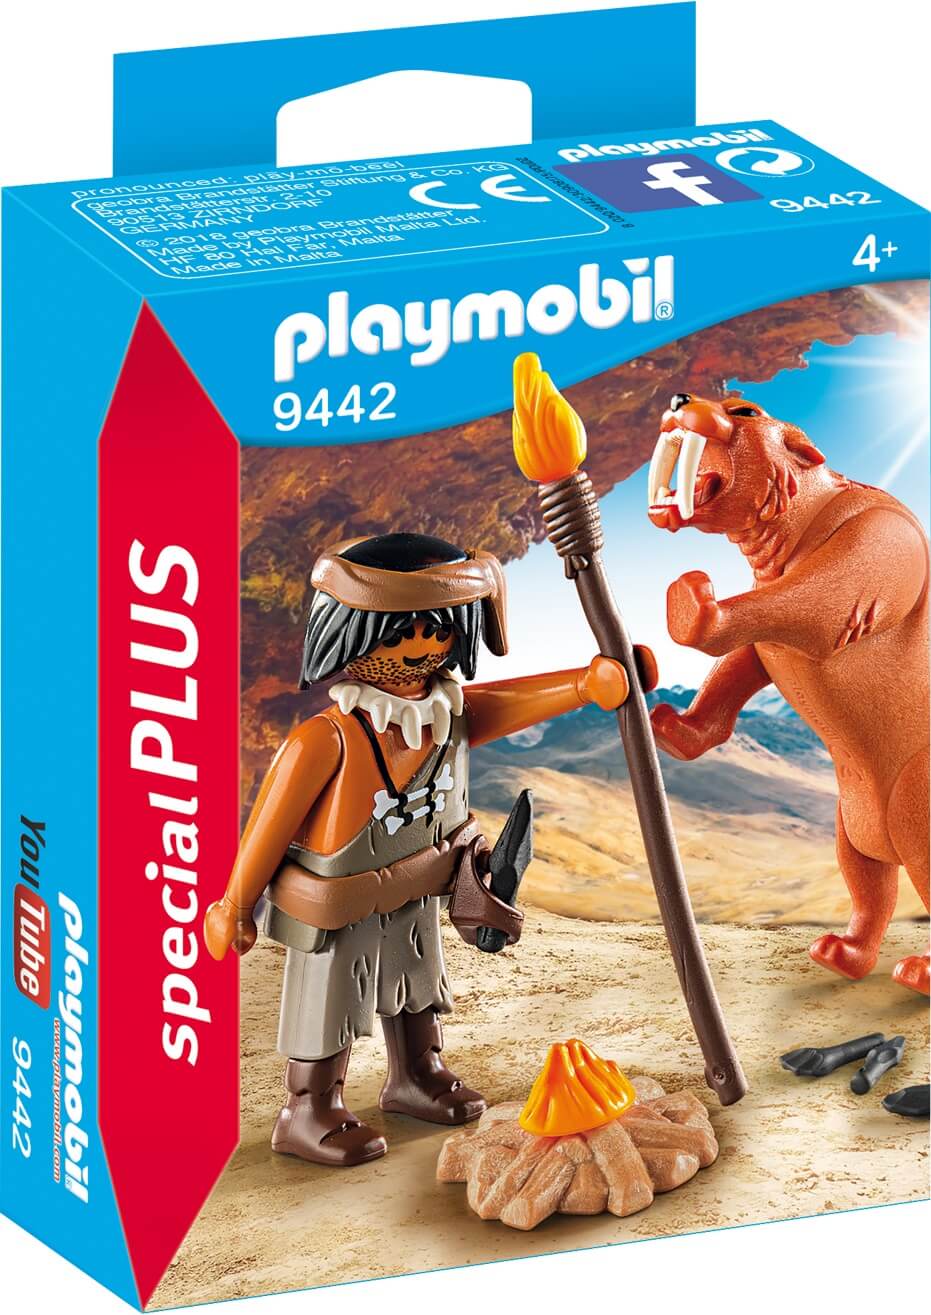 Neandertal con Tigre Dientes de Sable ( Playmobil 9442 ) imagen b